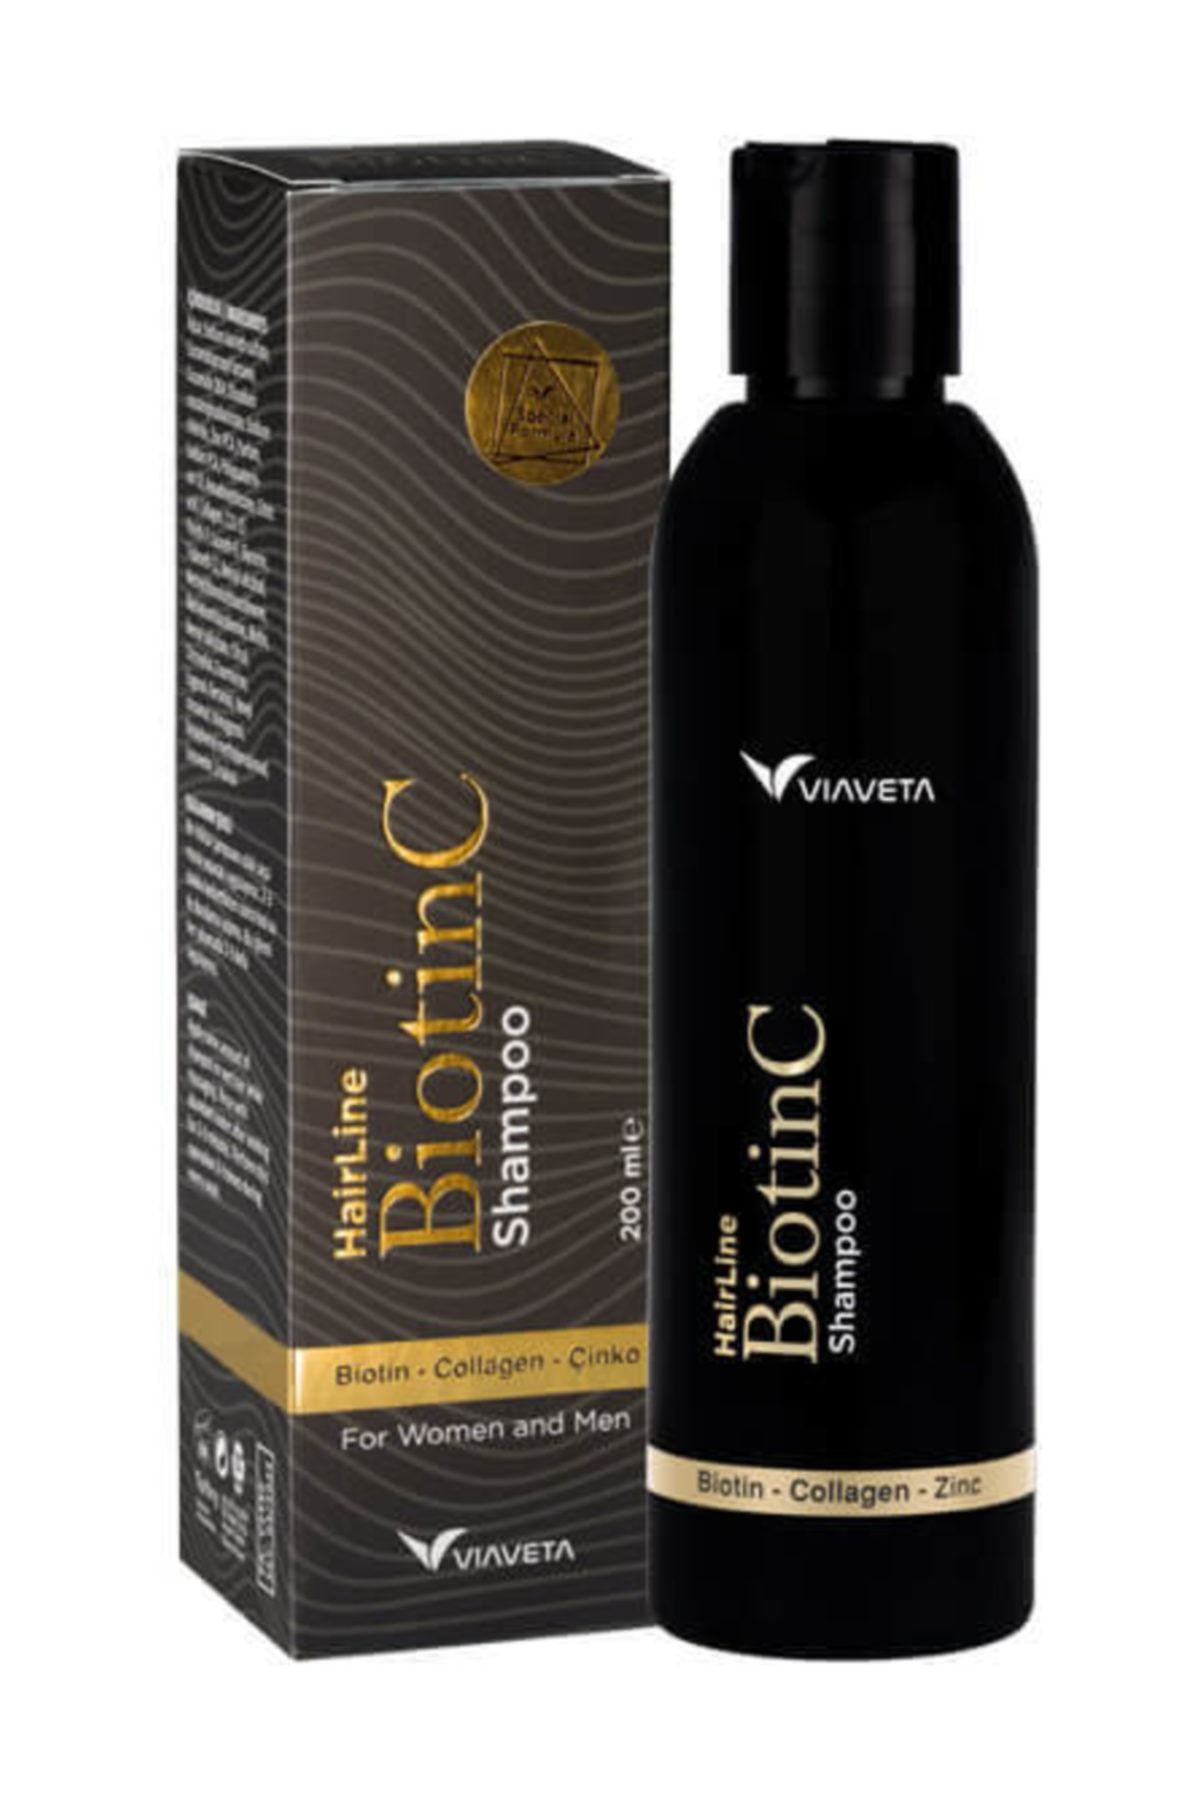 ViaVeta Biotinc Şampuan - 200 ml